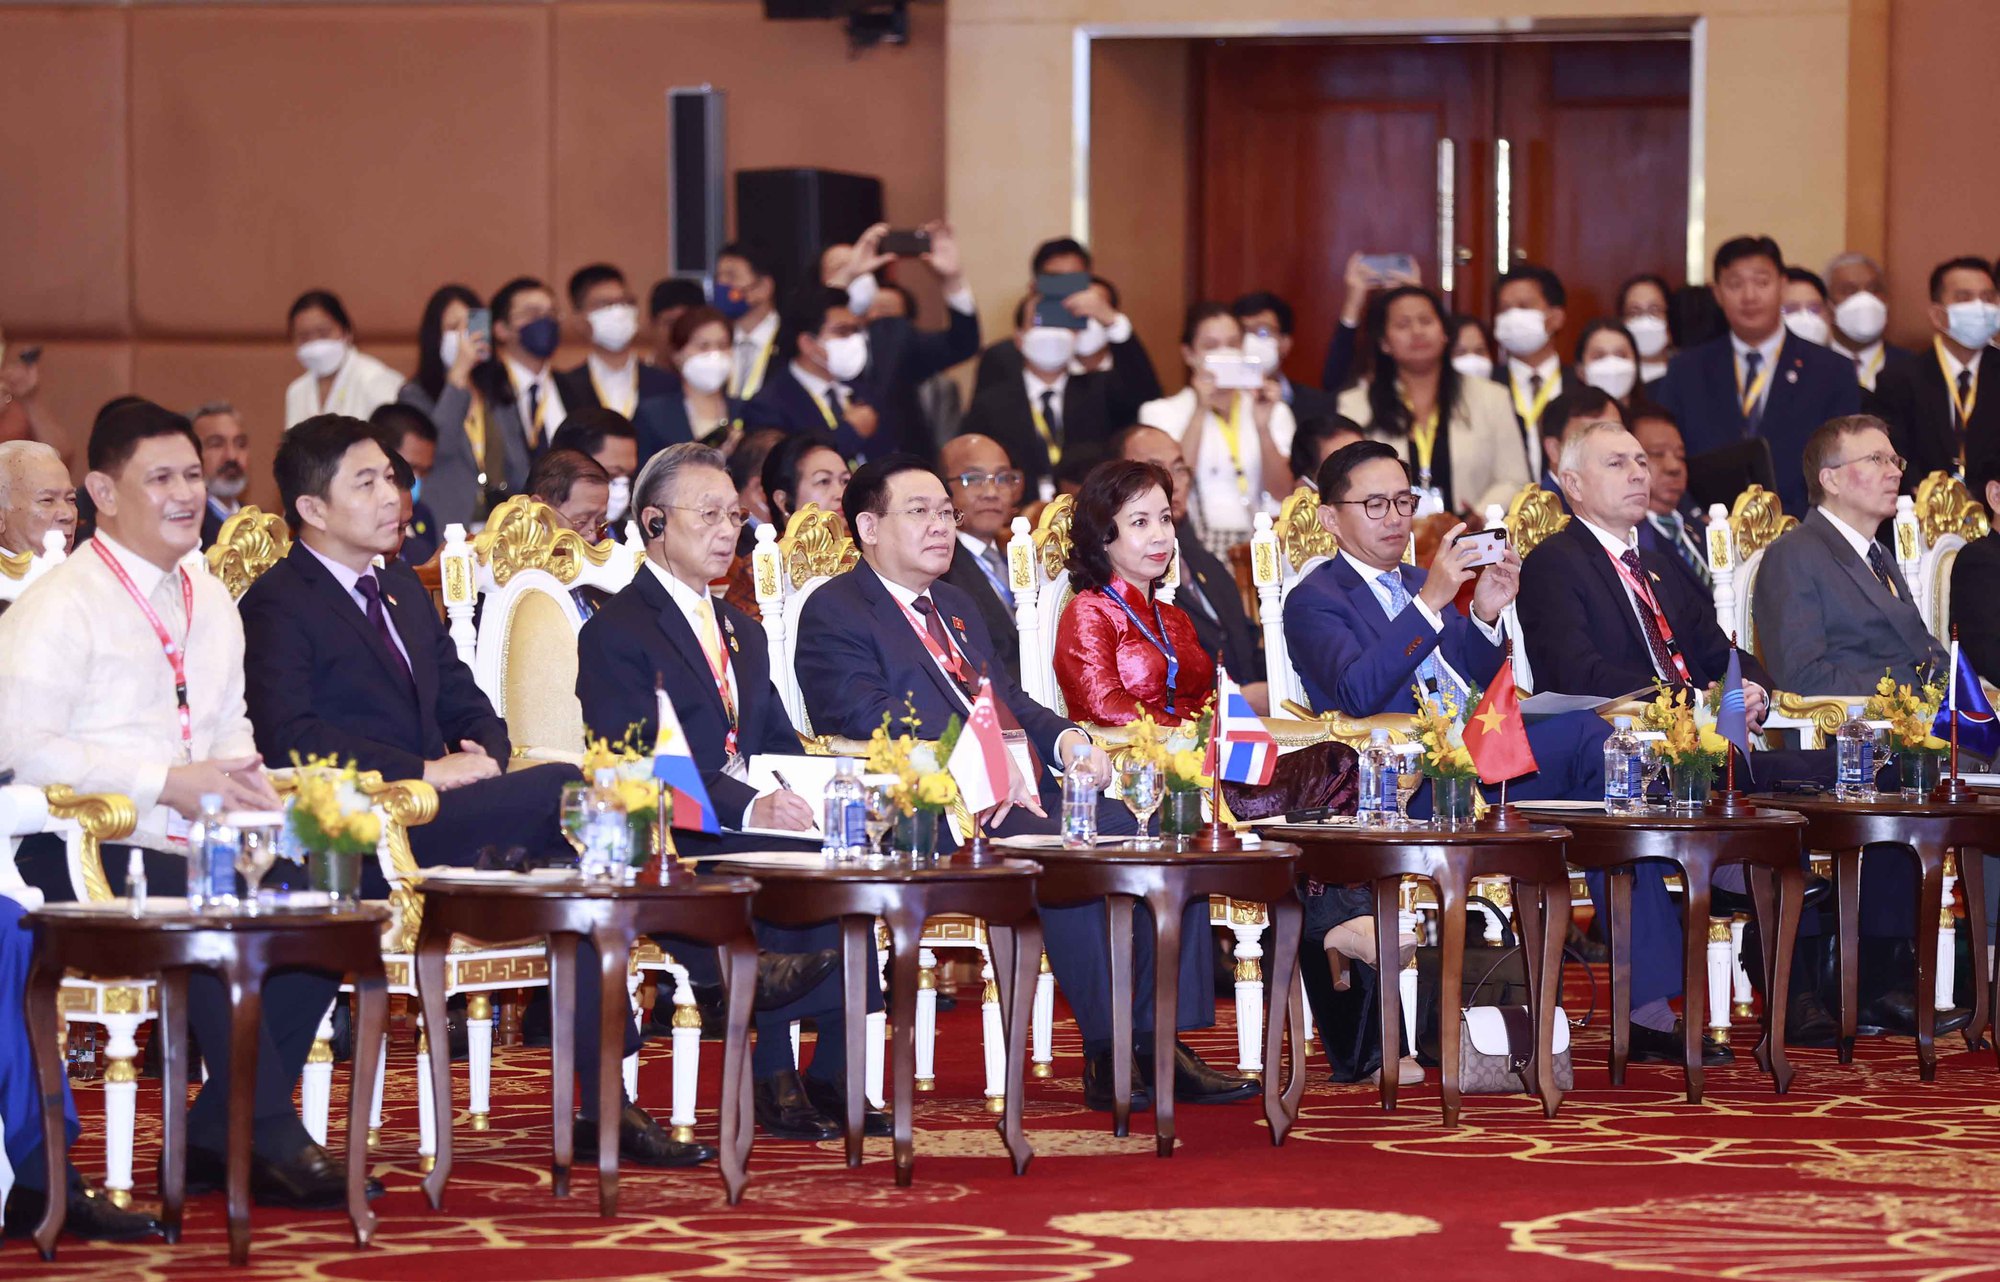 Khai mạc Đại hội đồng liên nghị viện các quốc gia Đông Nam Á lần thứ 43 - Ảnh 2.